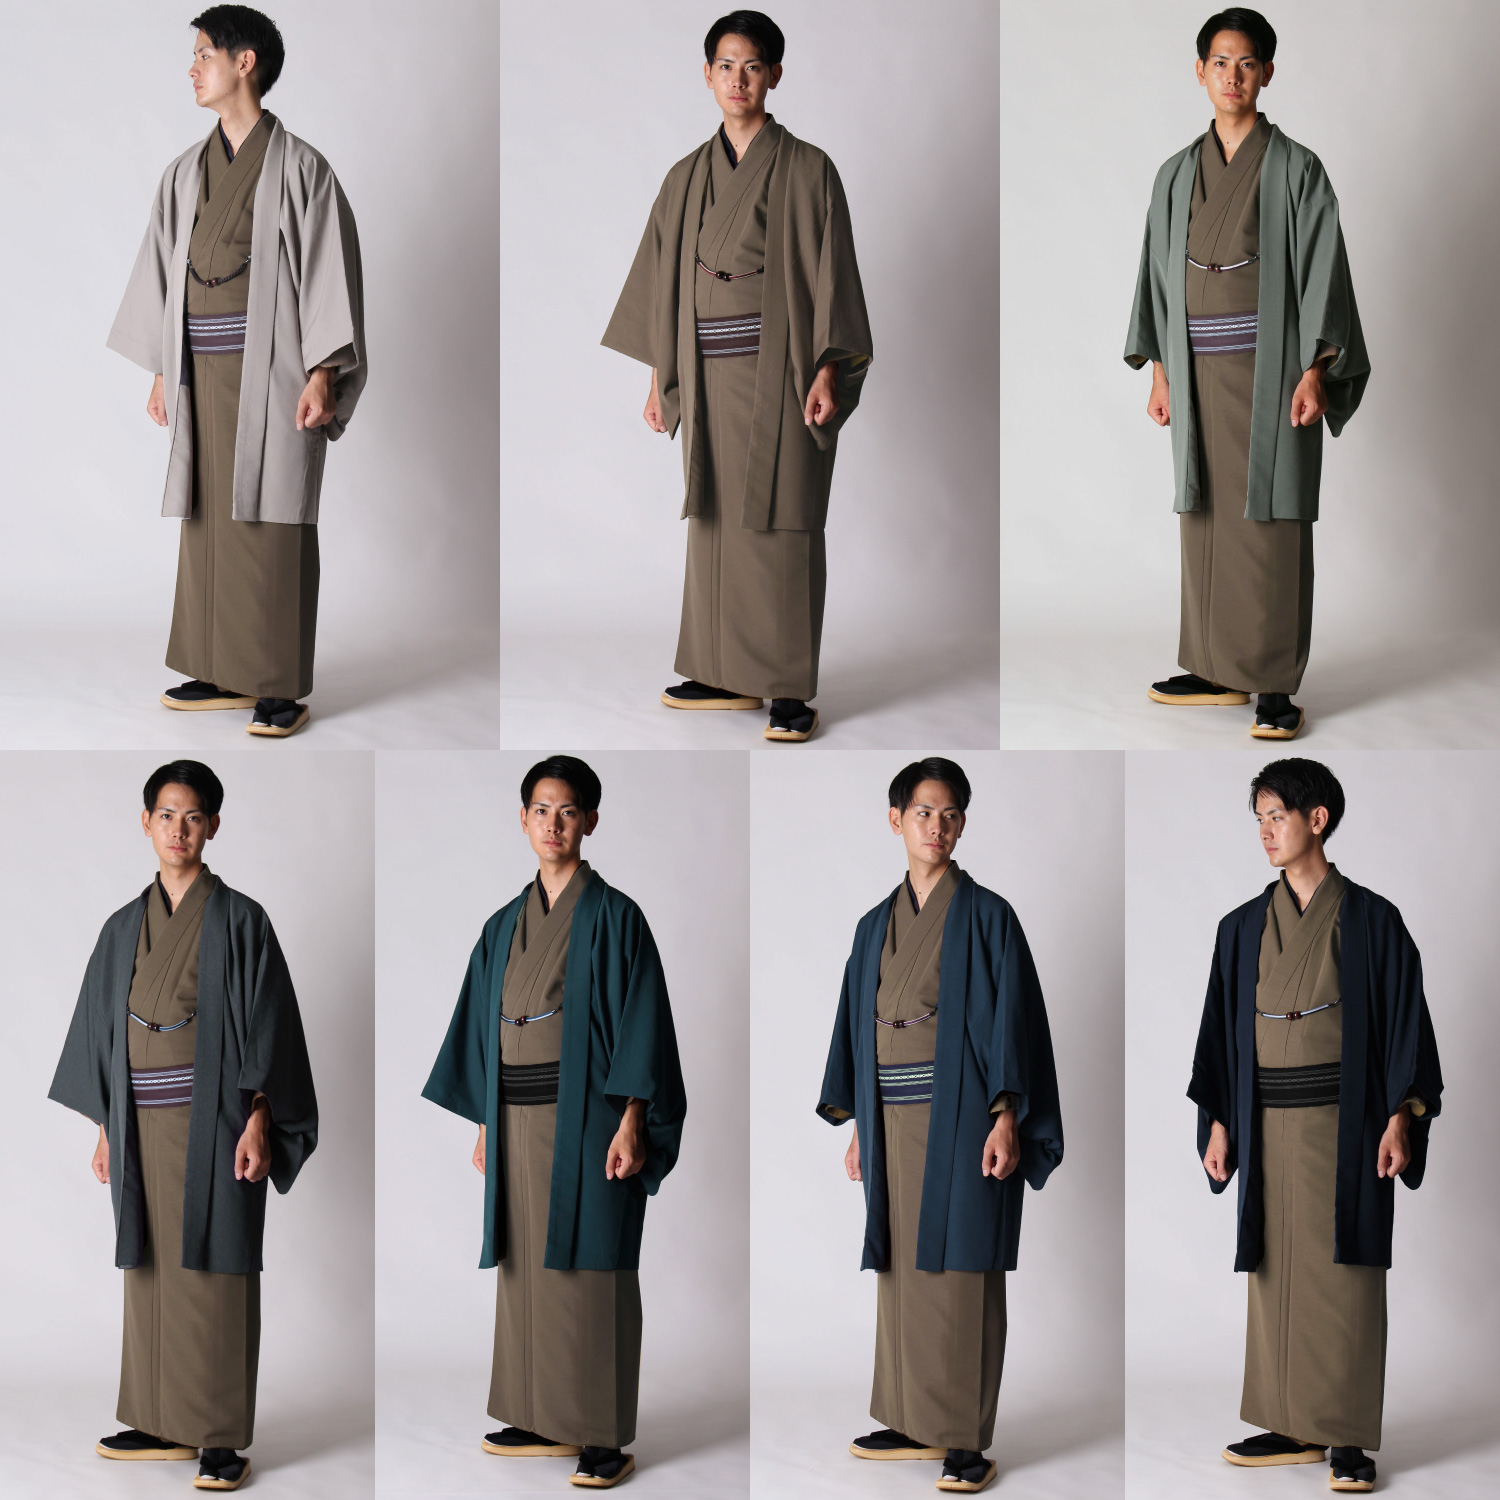 男着物の加藤商店ブログ »茶の着物と羽織の組み合わせ | 男着物の加藤 